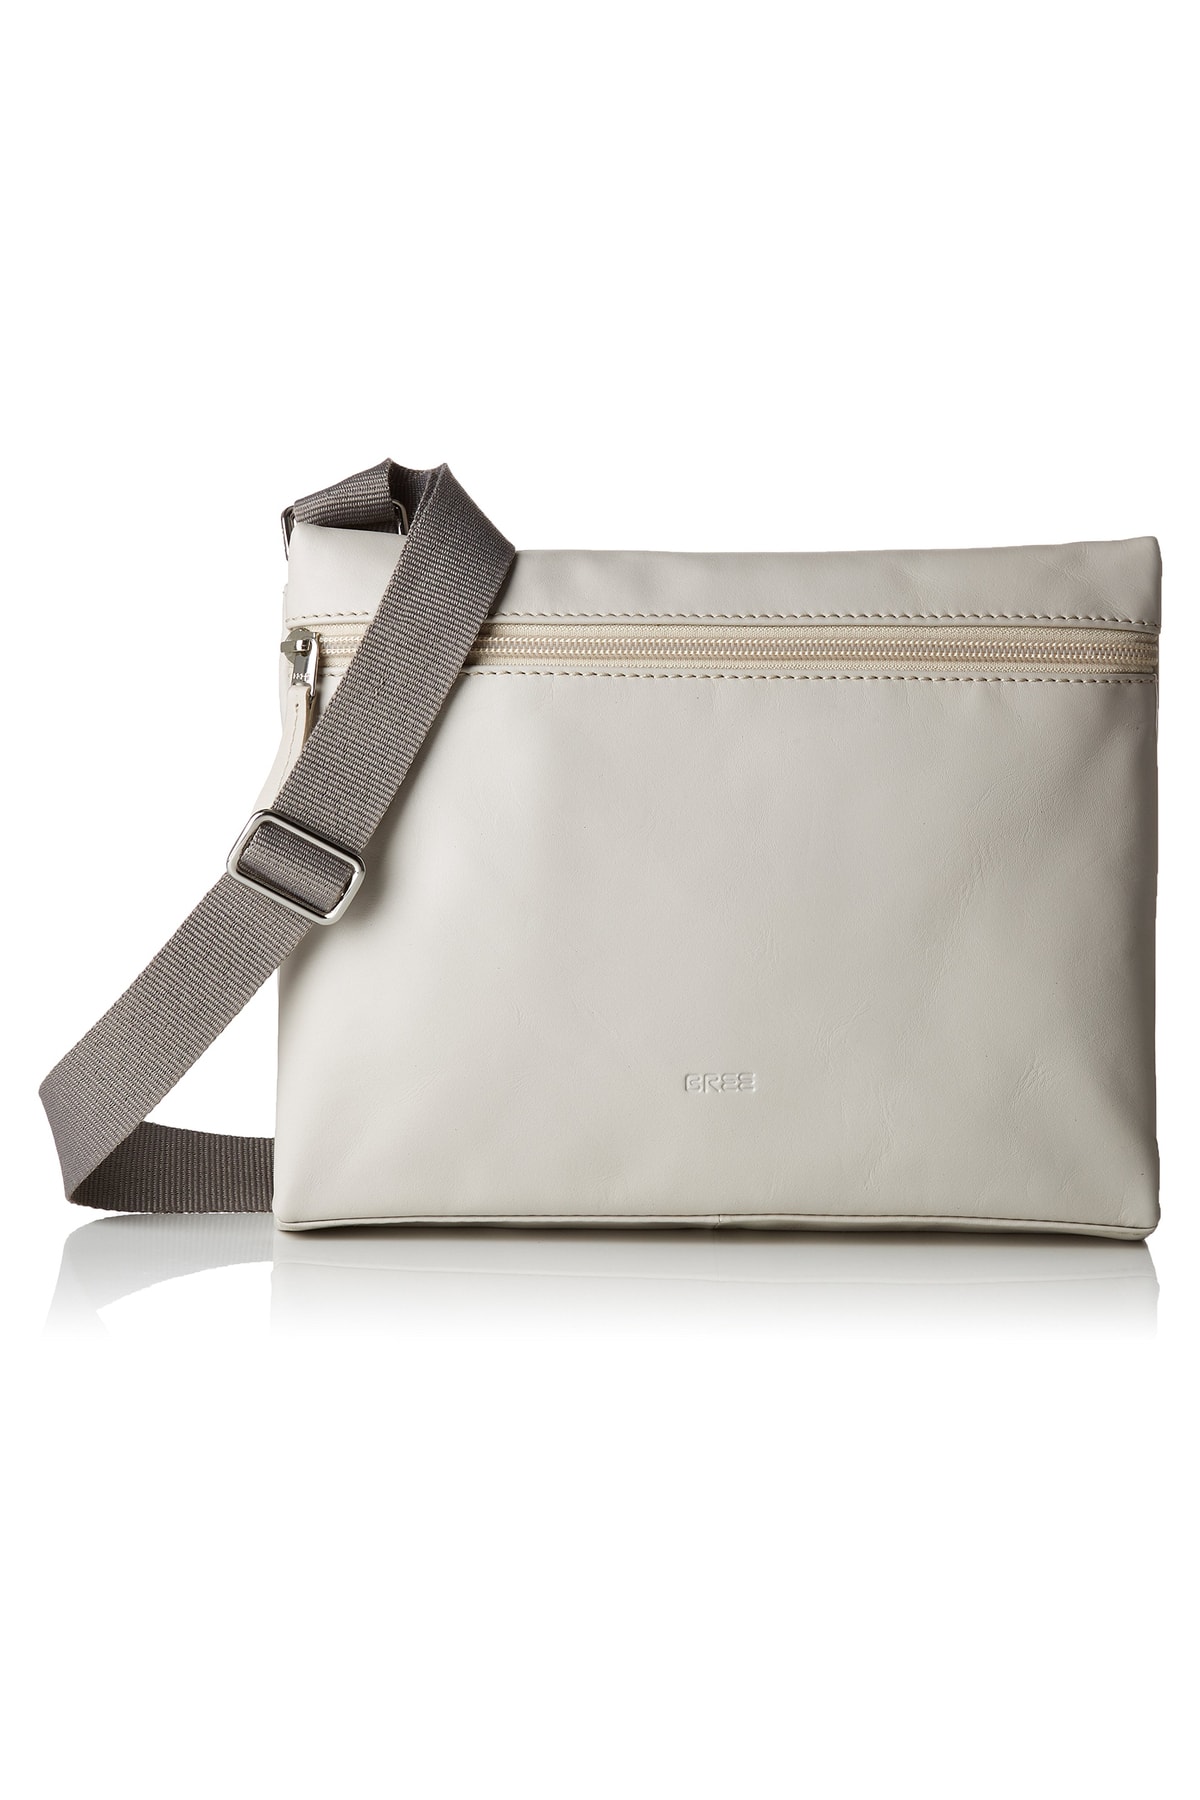 Bree Handtasche Grau Strukturiert Fast ausverkauft